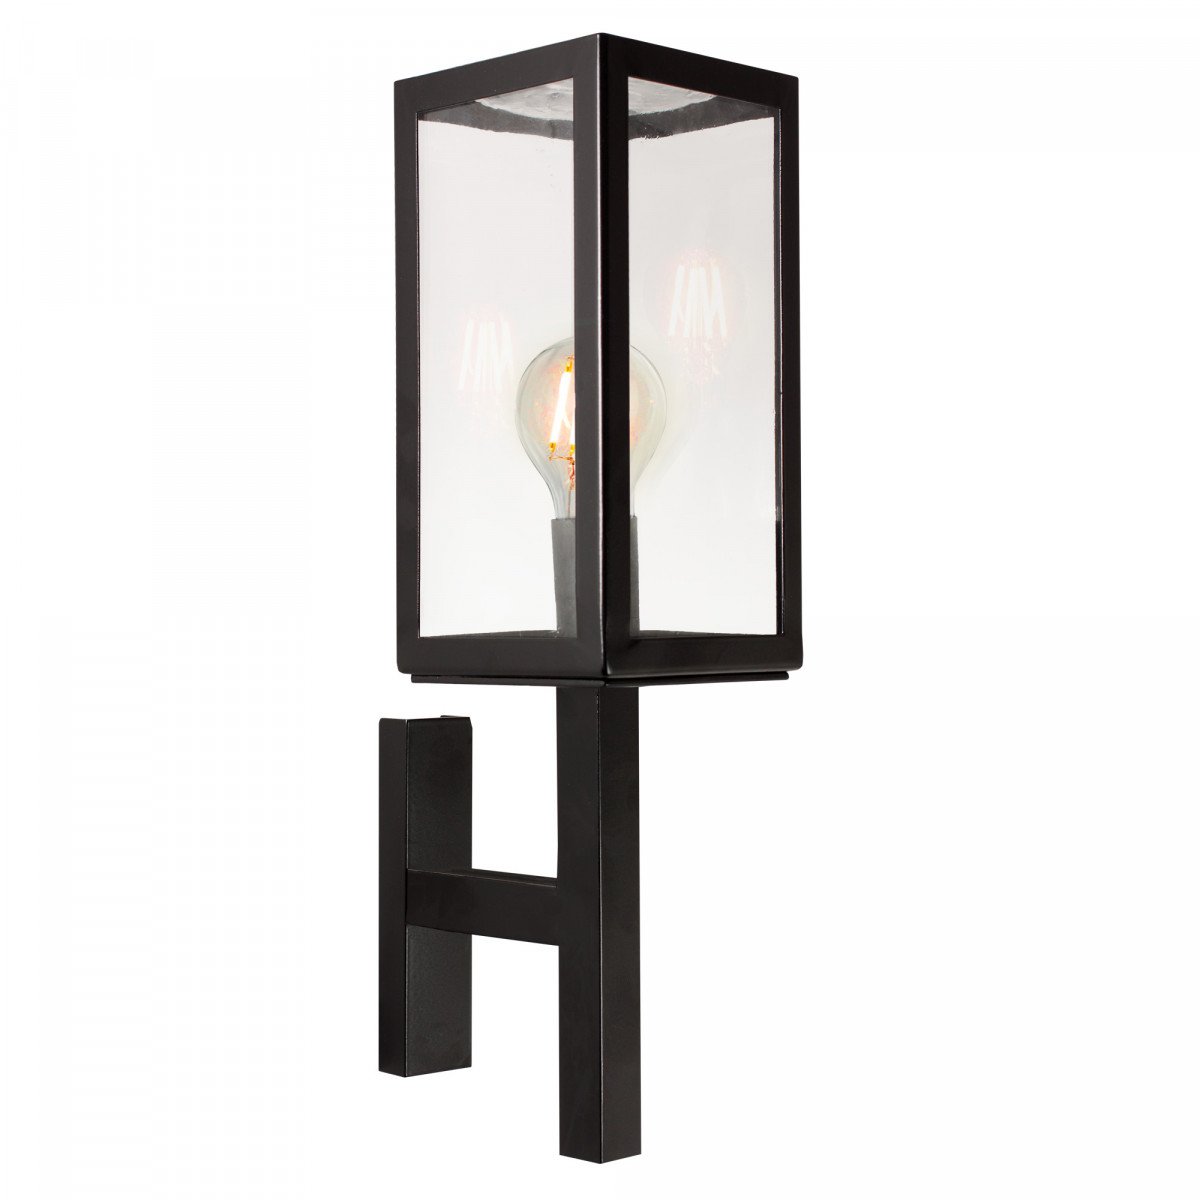 Buitenlamp Bilthoven zijdeglans zwarte buiten wandlamp super stijlvol strak klassiek vormgegeven, rechte steun, strakke belijning, heldere glazen, box design handmade kwaliteitsverlichting